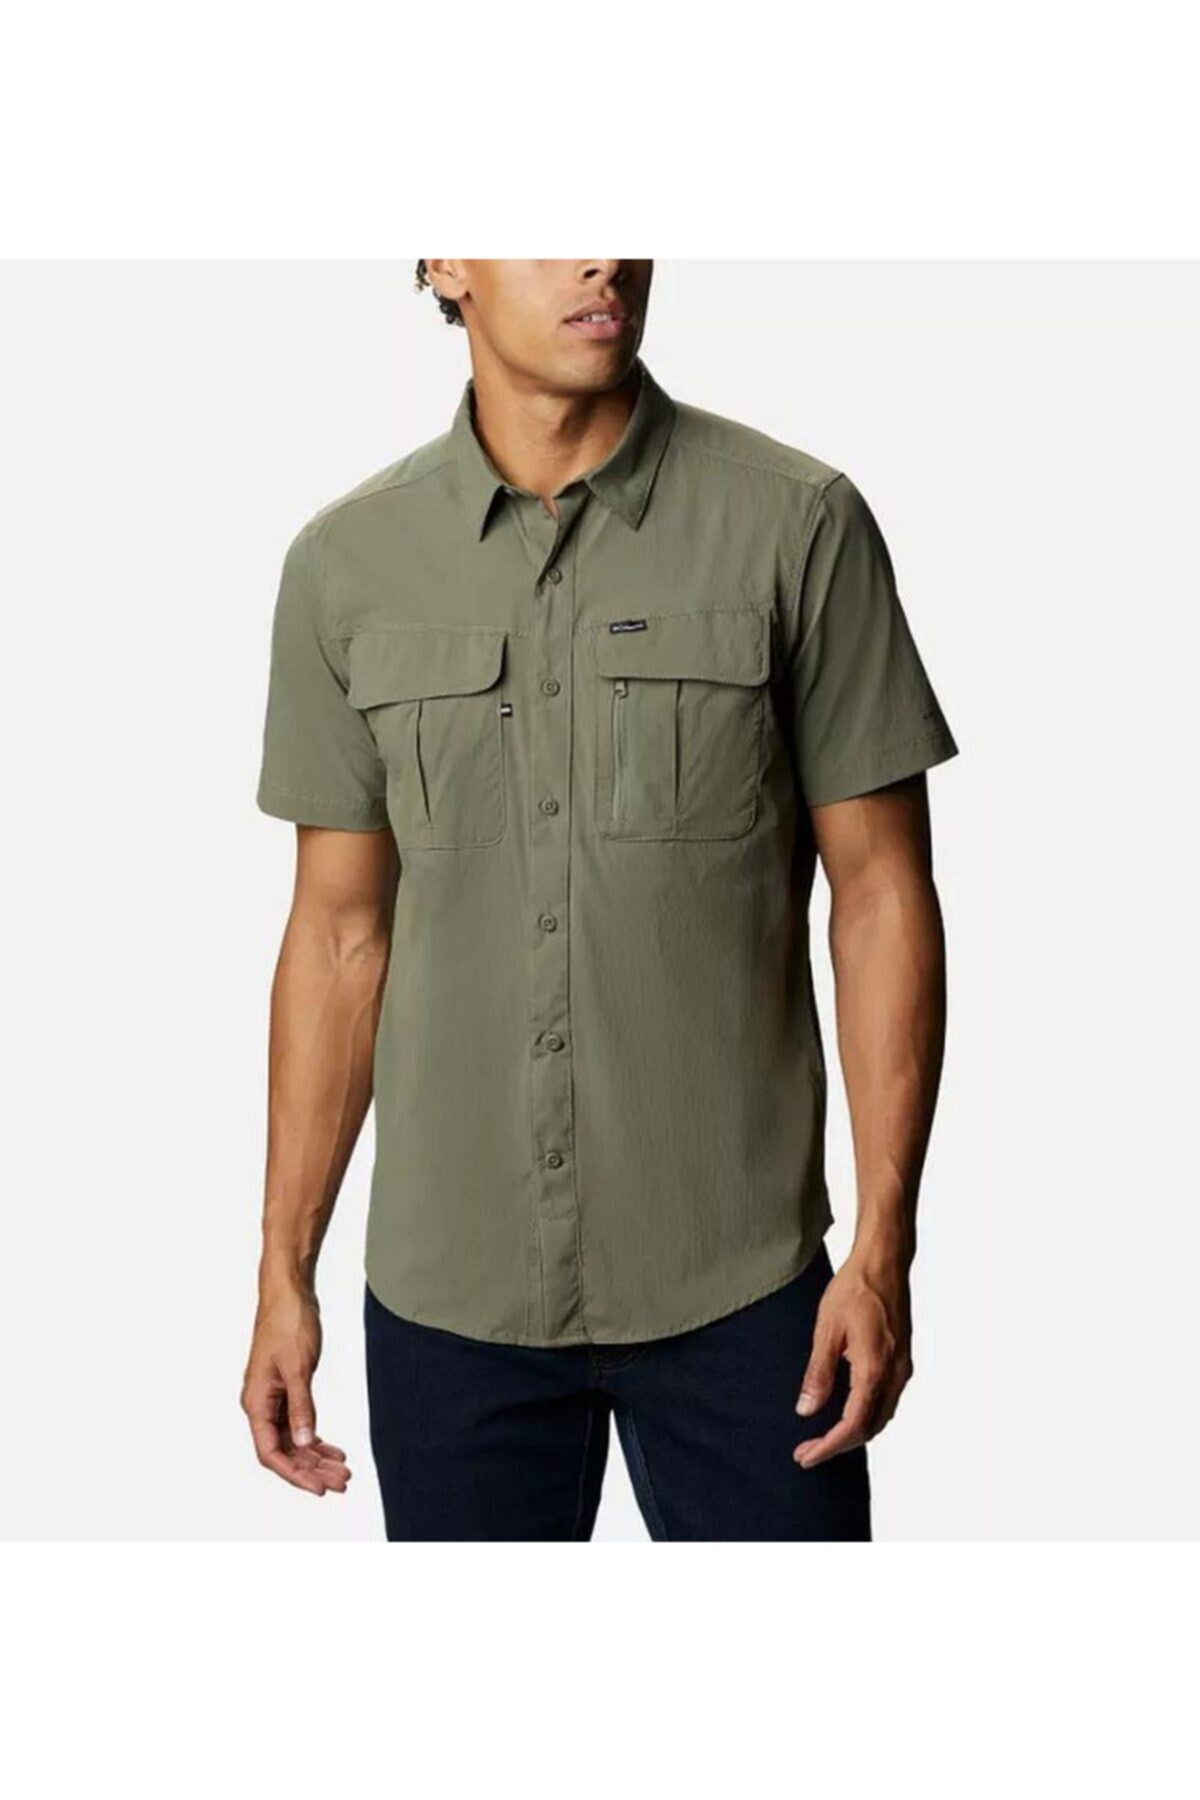 پیراهن آستین کوتاه مردانه سبز مارک columbia AO0763-397